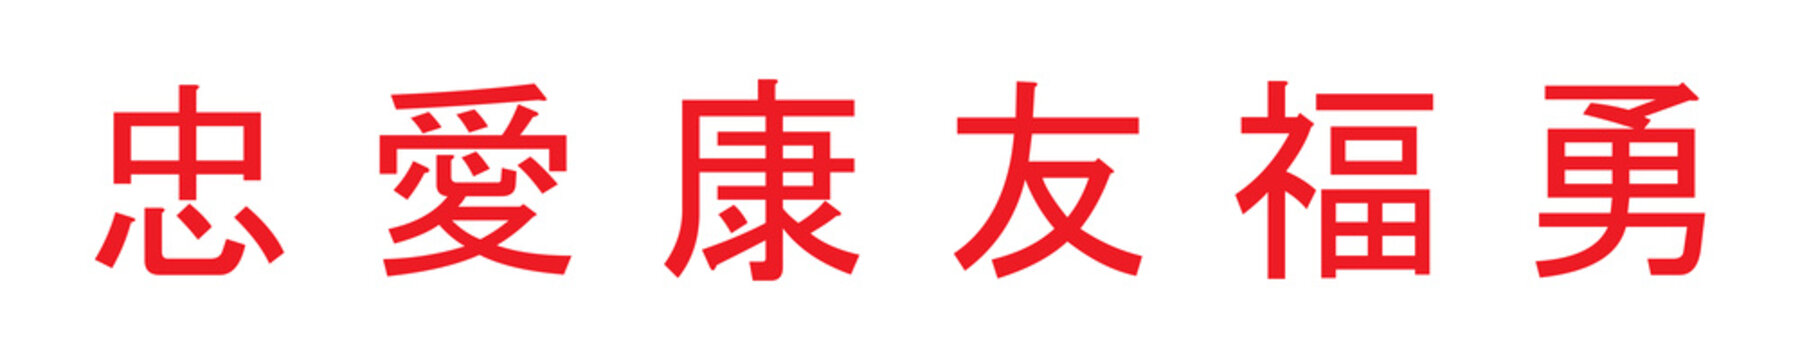 Symbol-Set - Chinesische Zeichen